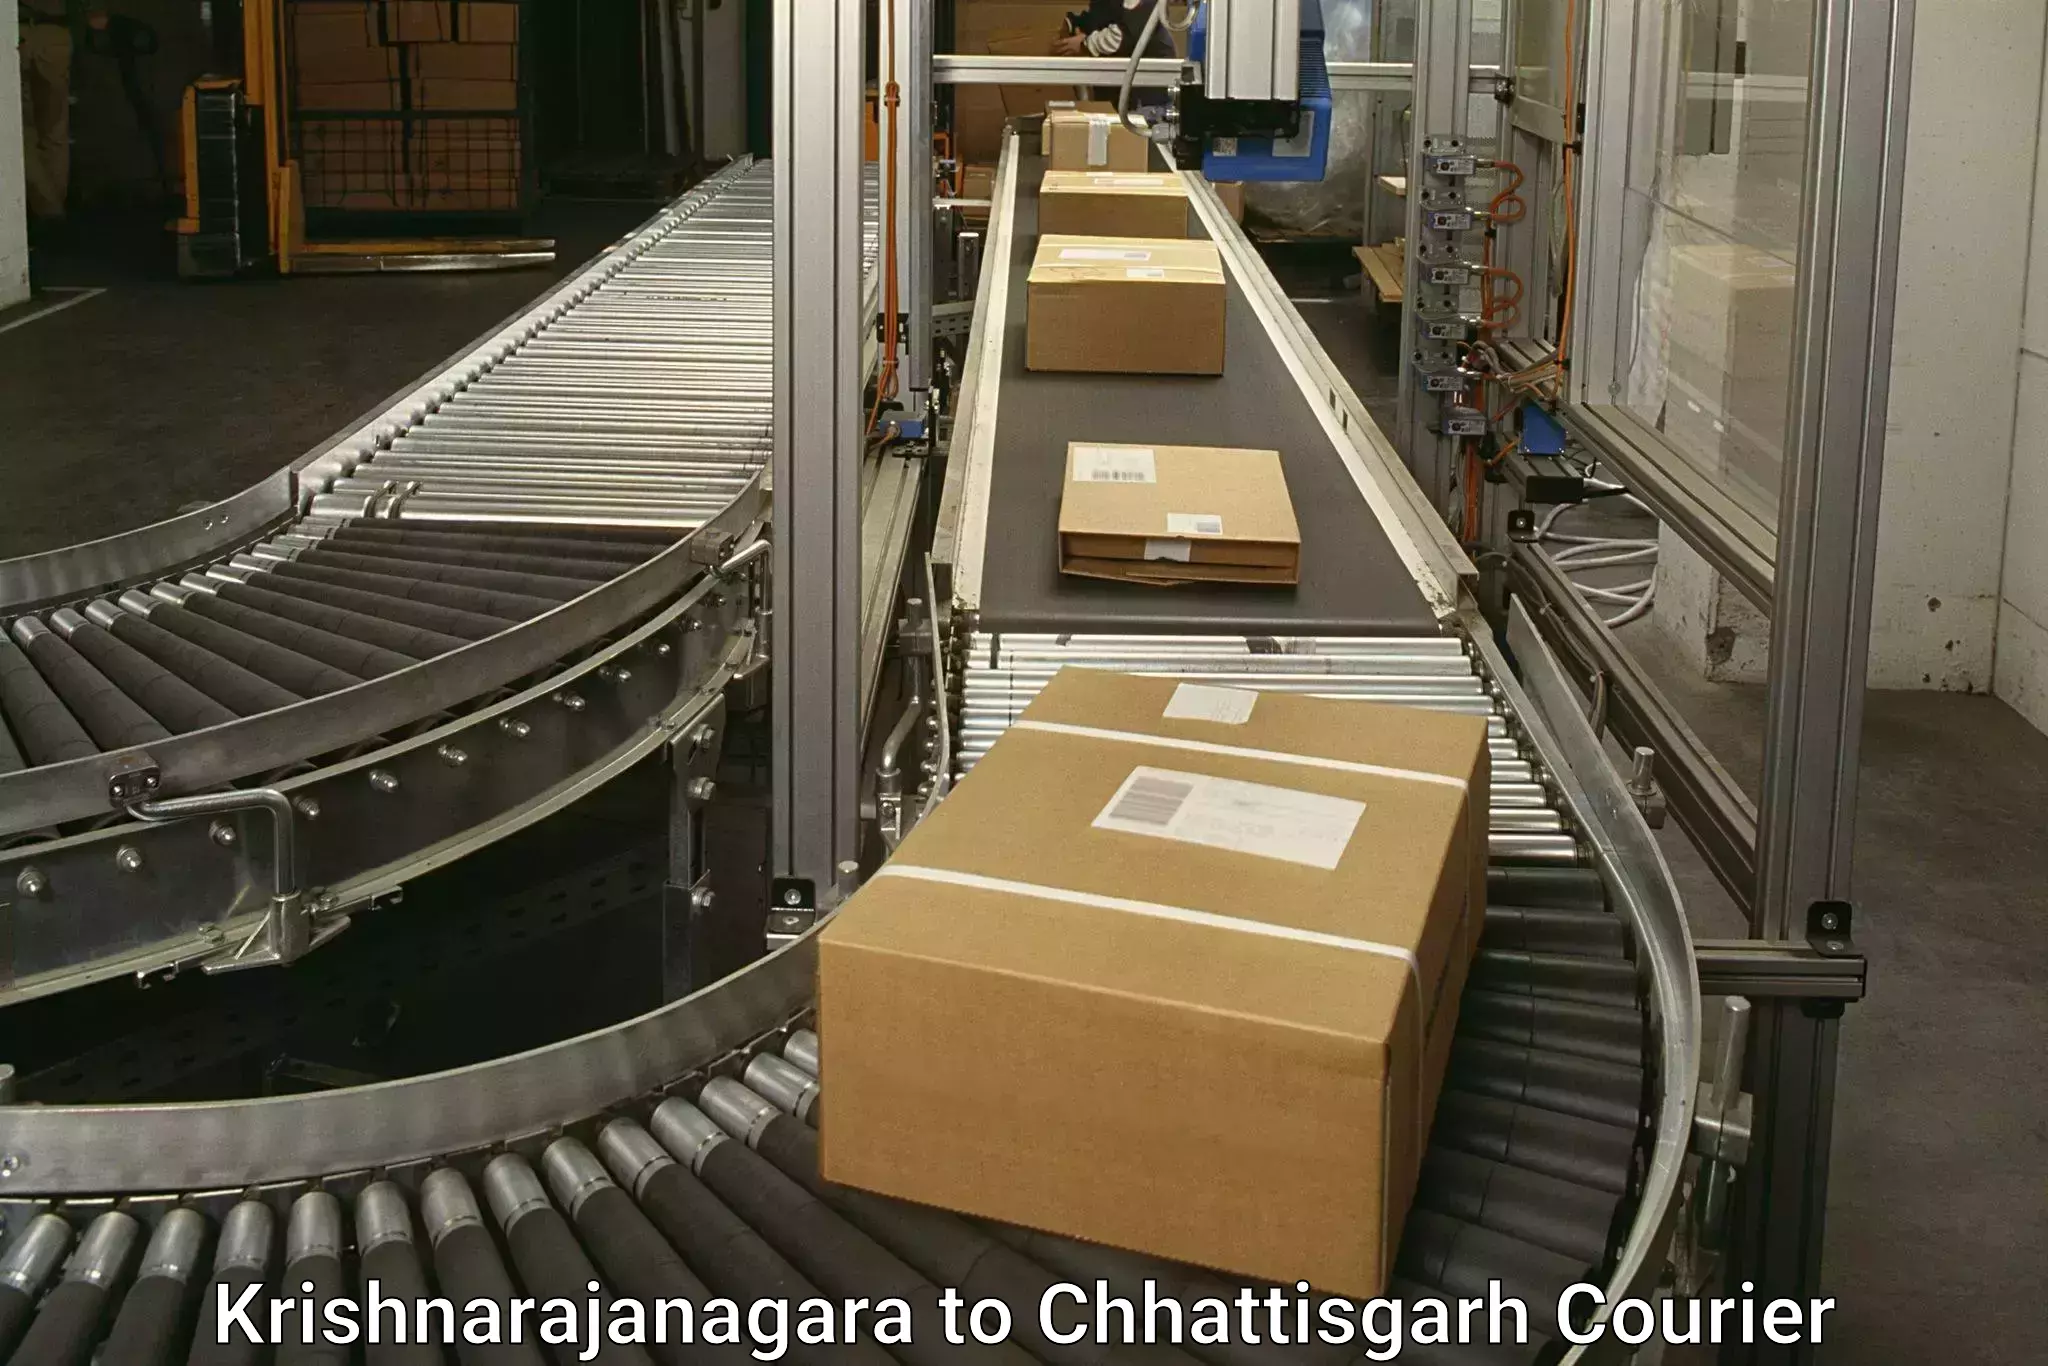 Courier services Krishnarajanagara to Chhattisgarh